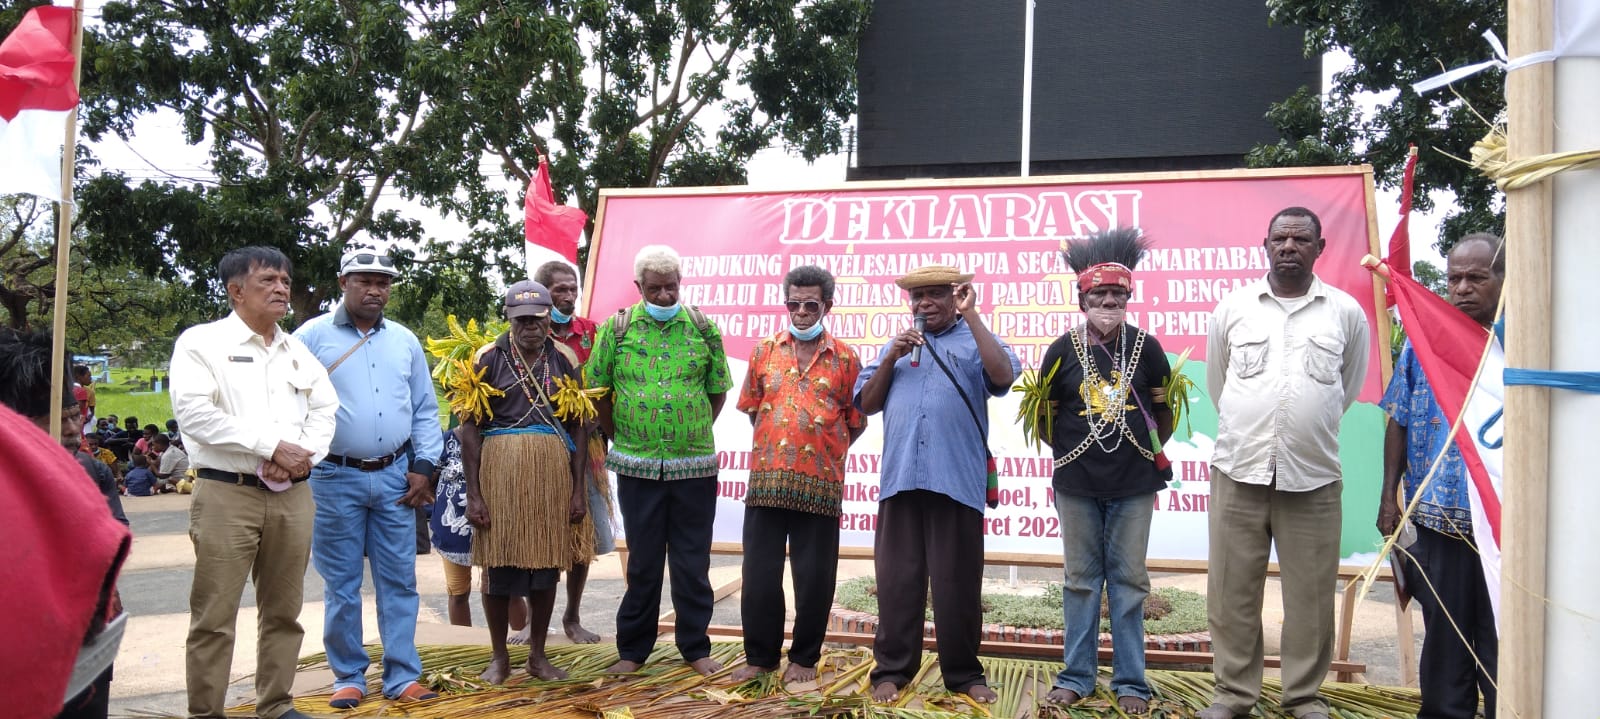 Koordinator Solidaritas Masyarakat Adat Wilayah Aim Ha, Paschalis Imadawa bersama sejumlah tokoh adat lain sedang memberikan keterangan pers – Surya Papua/Yulianus Bwariat